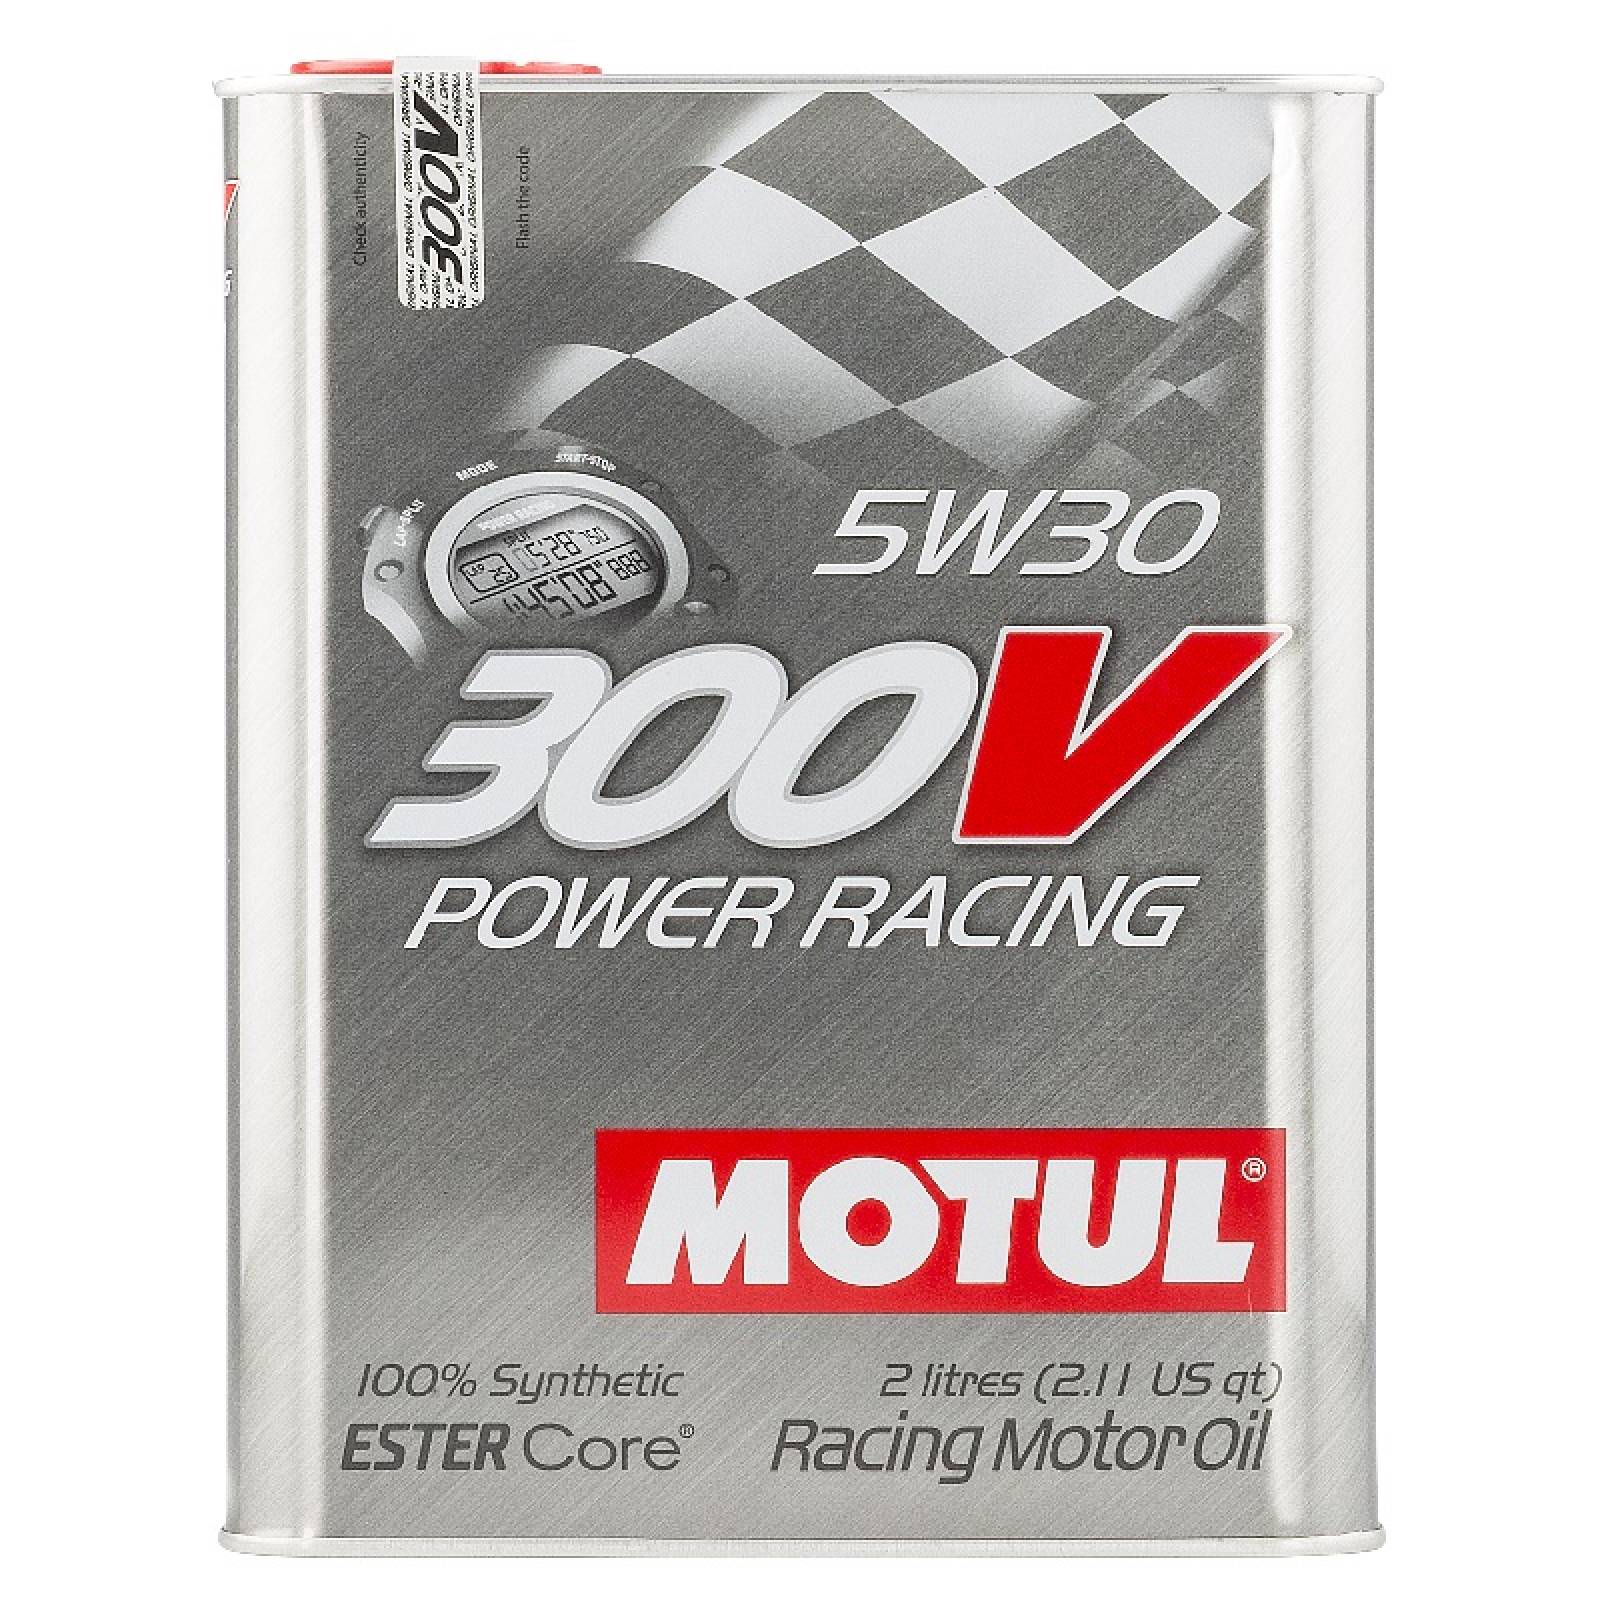 Aceite Motor Motul 300V Power Racing 5W30  2 Litros